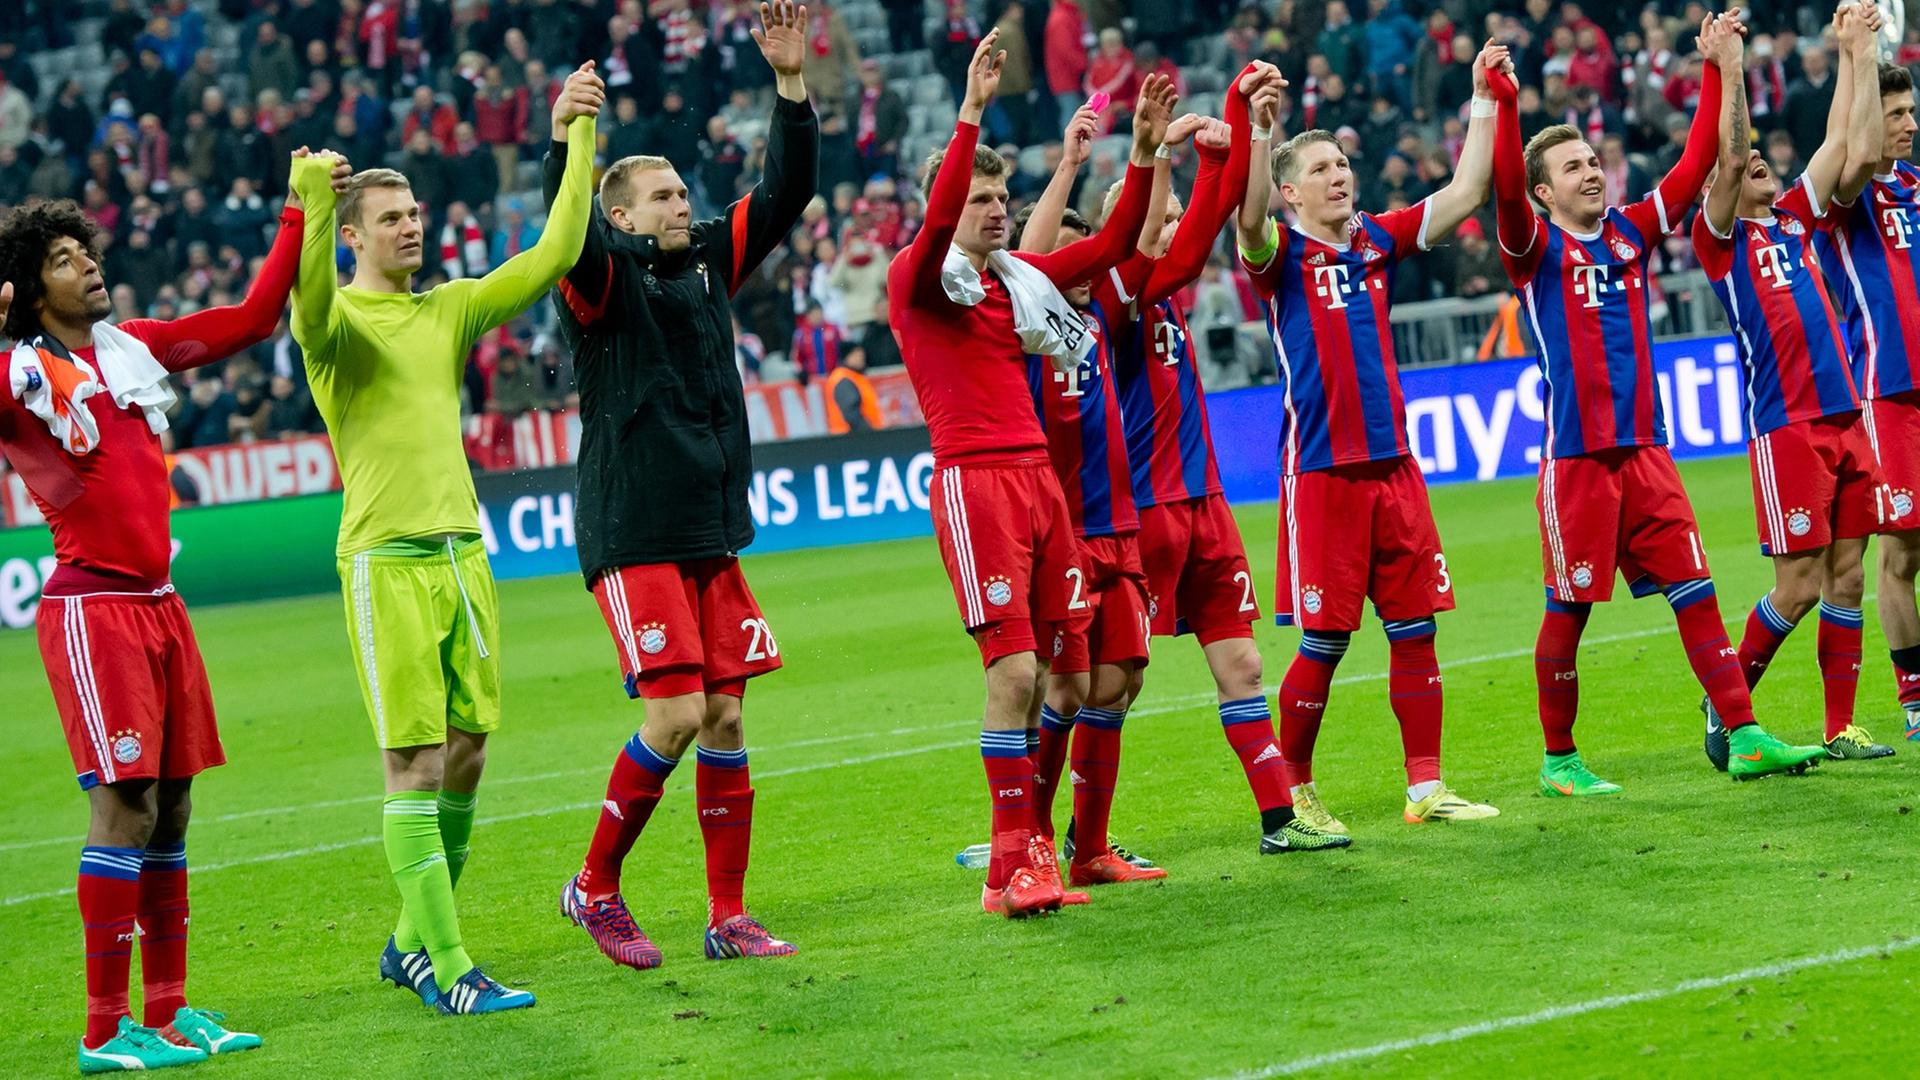 Die Spieler vom FC Bayern München jubeln nach ihrem Sieg gegen Schachtar Donezk